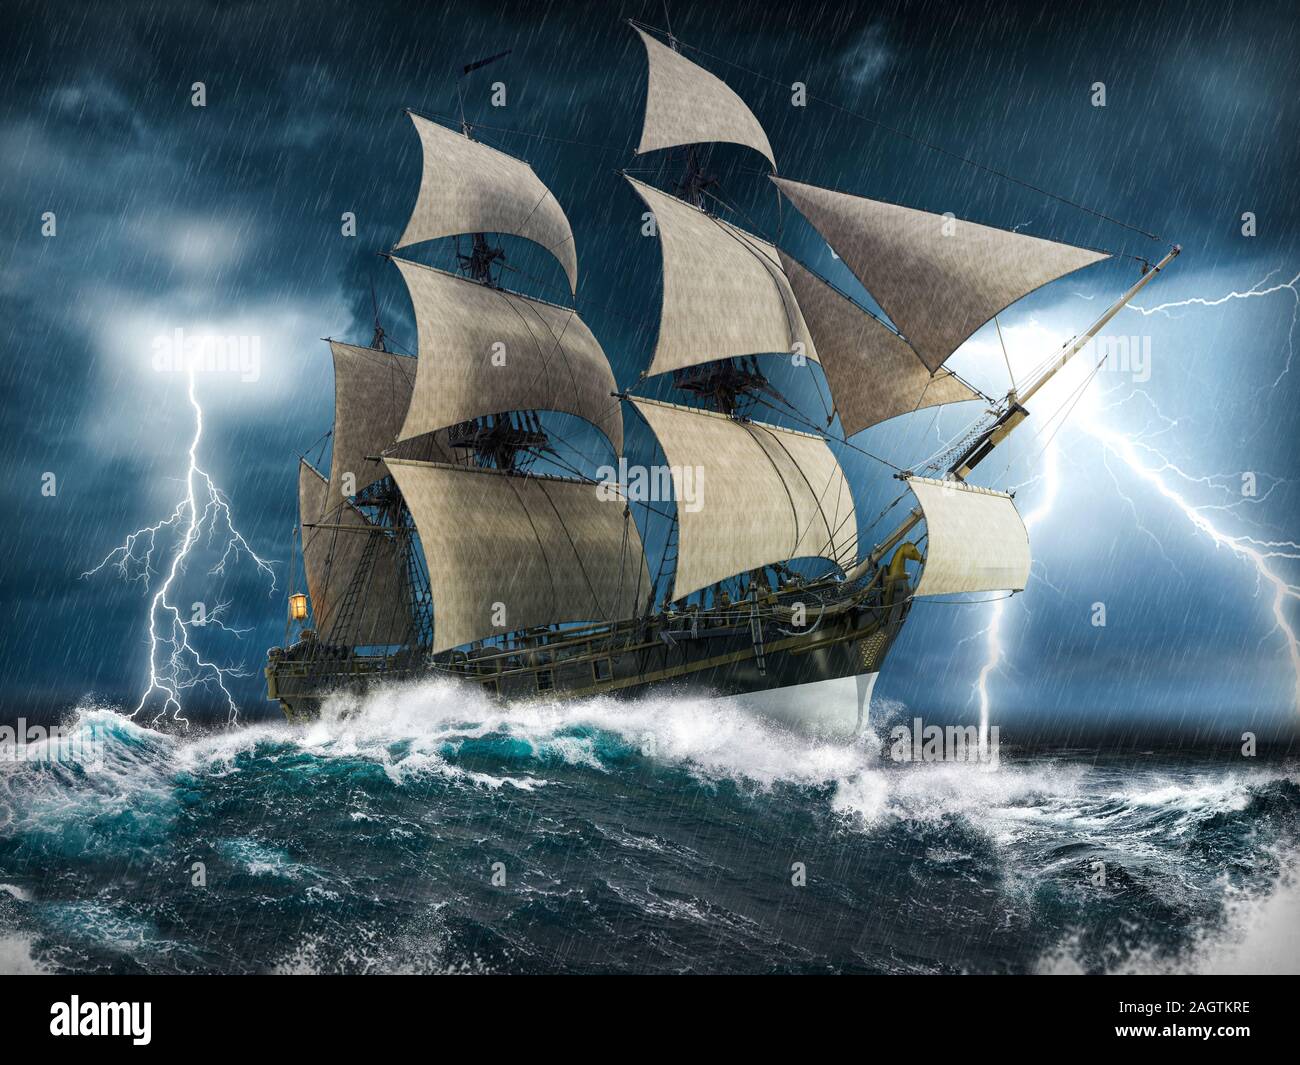 Ozean segeln Schiff in Seenot, kämpfen, flott zu bleiben, in einem schweren Sturm mit großen Wellen und Blitz, 3d-render Malerei Stockfoto